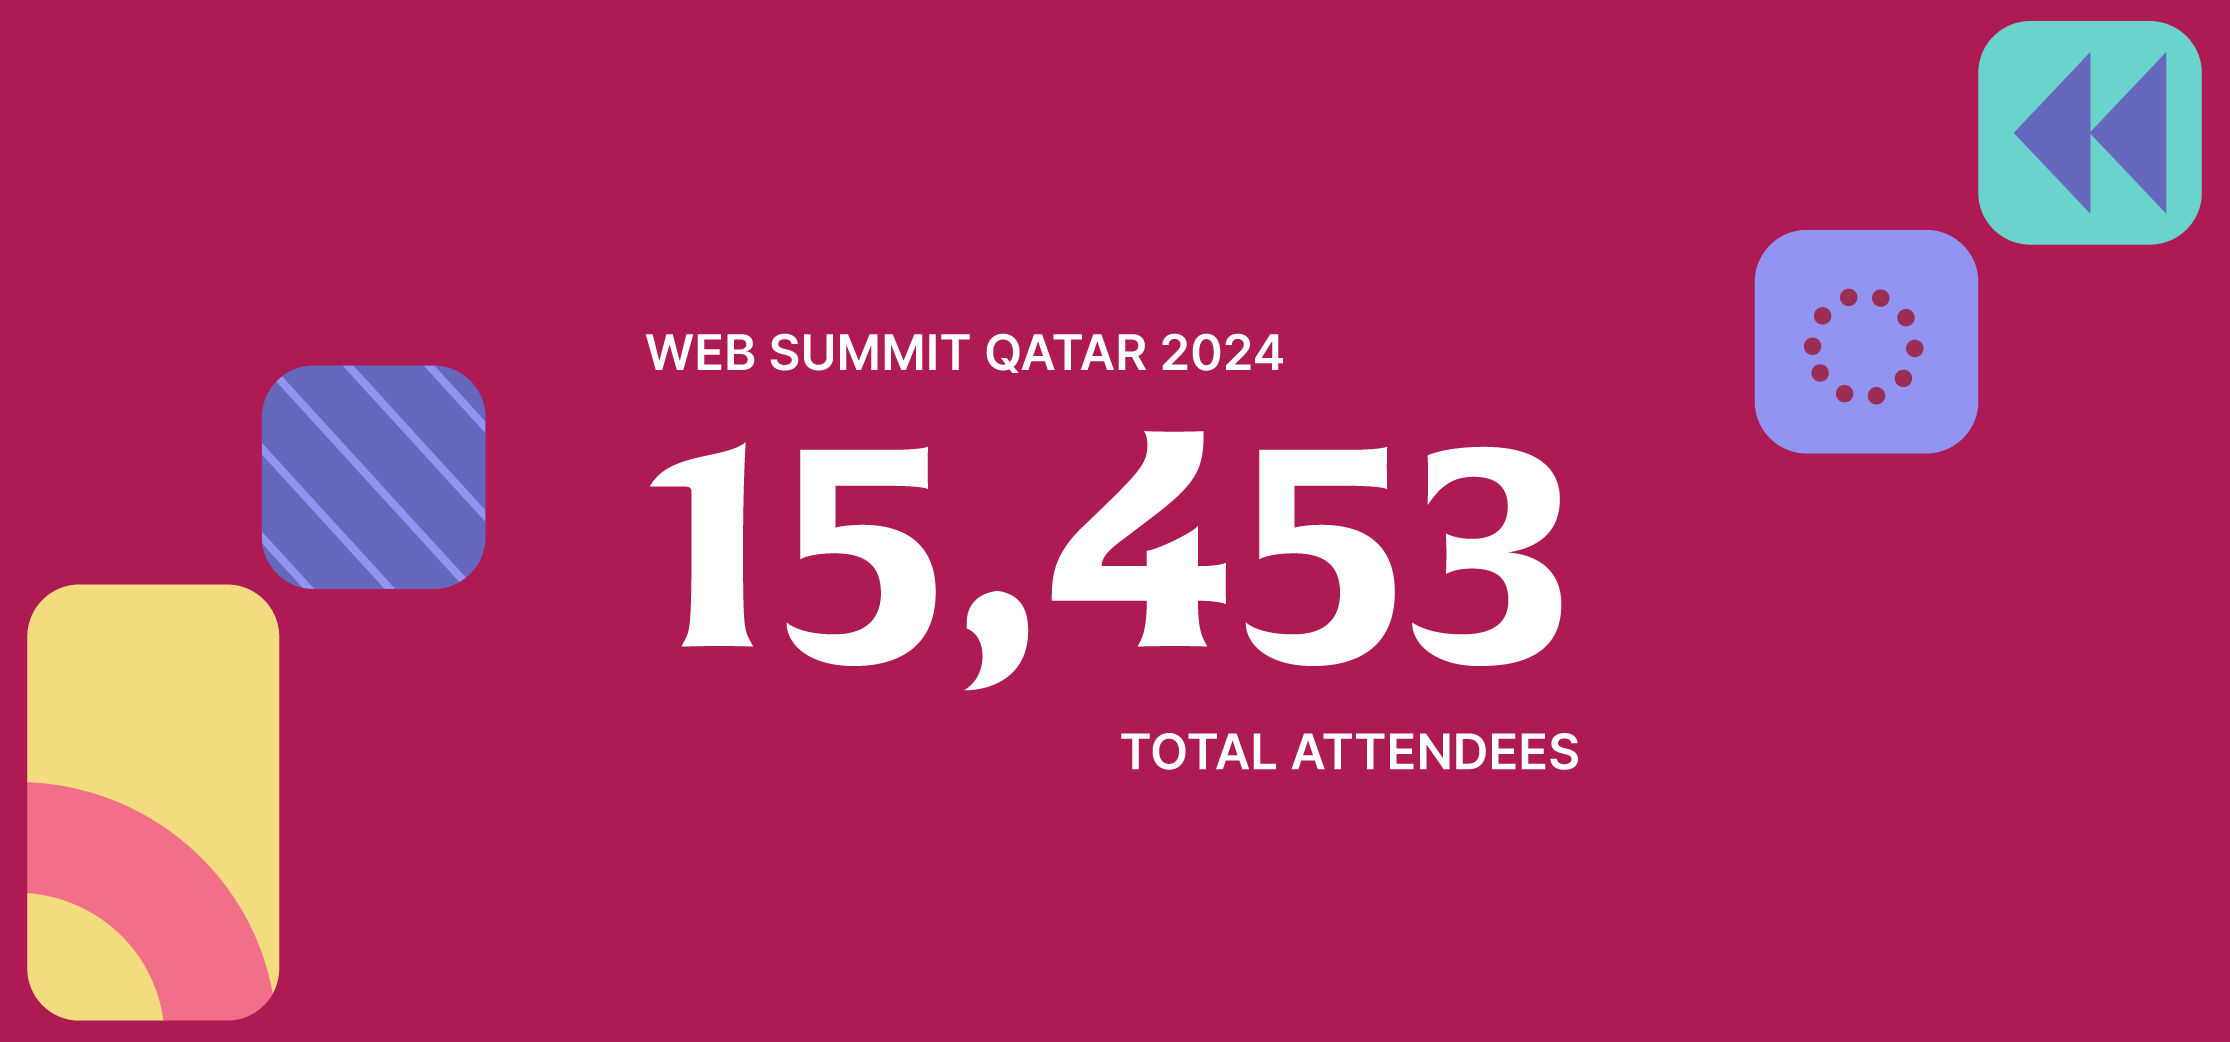 Text reads 'Web Summit Qatar 2024. 15,453 total attendees'